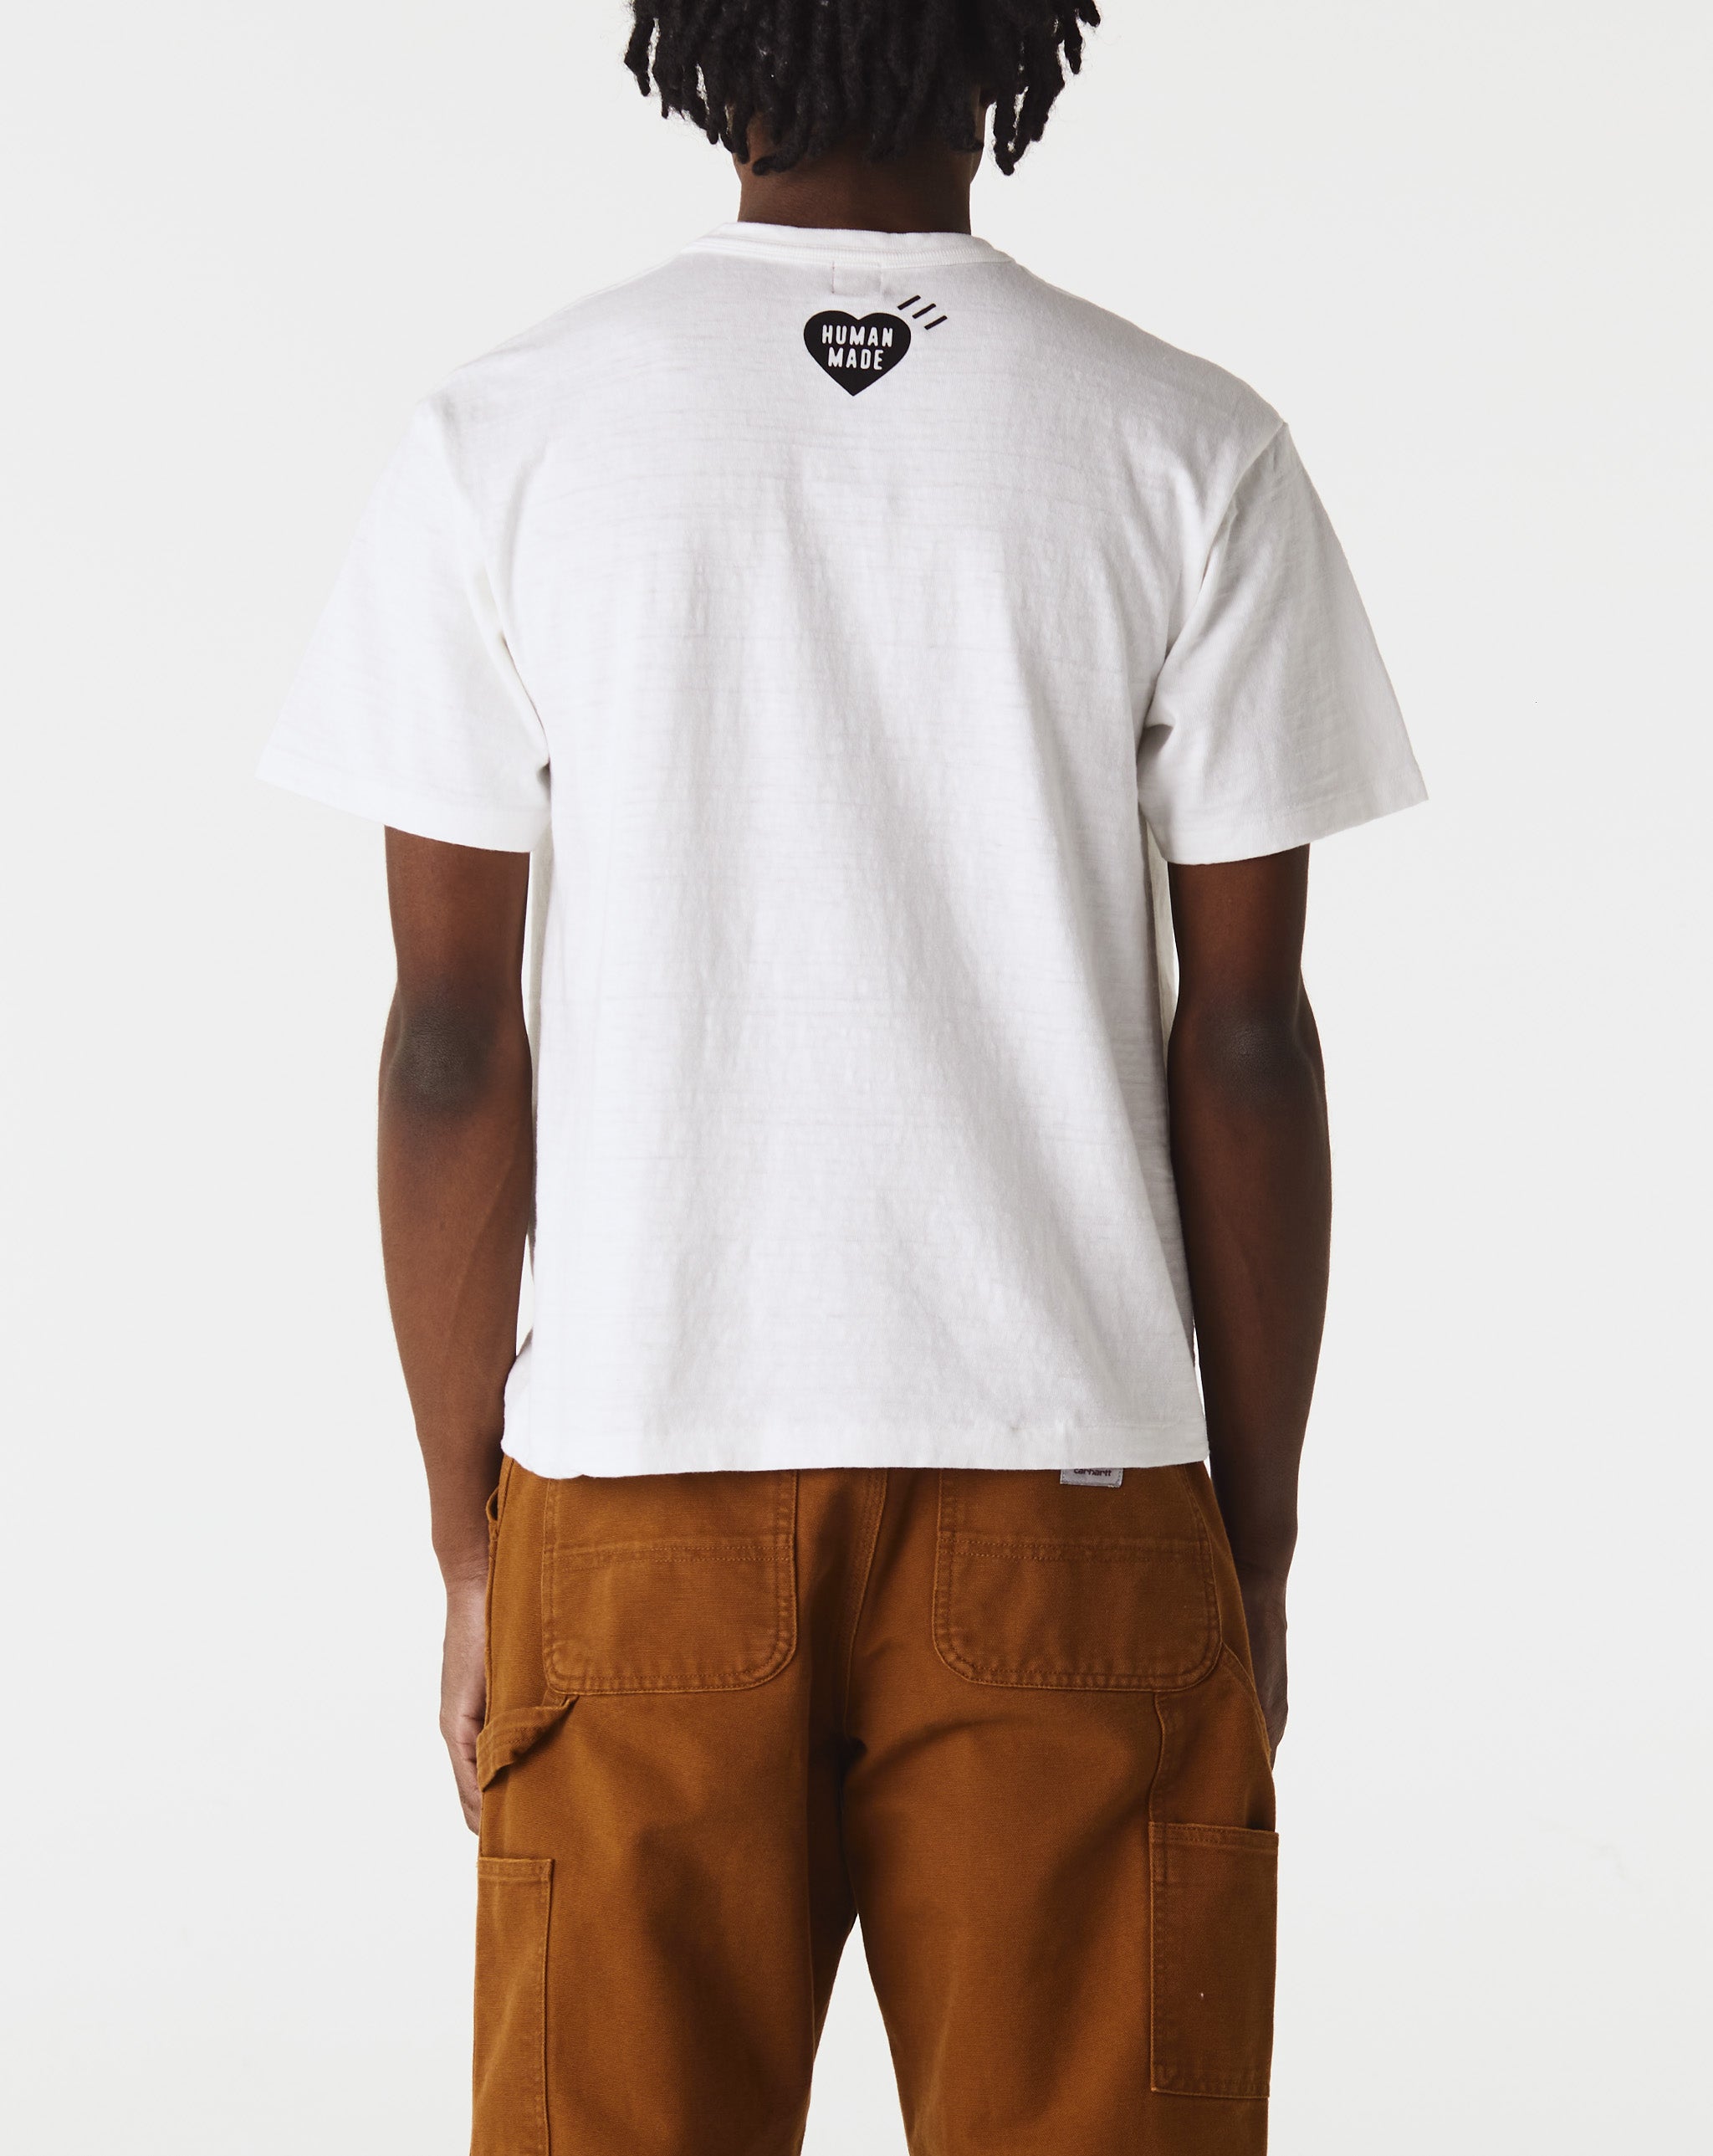 Human Made Graphic T-Shirt #03  - Cheap Urlfreeze Jordan outlet